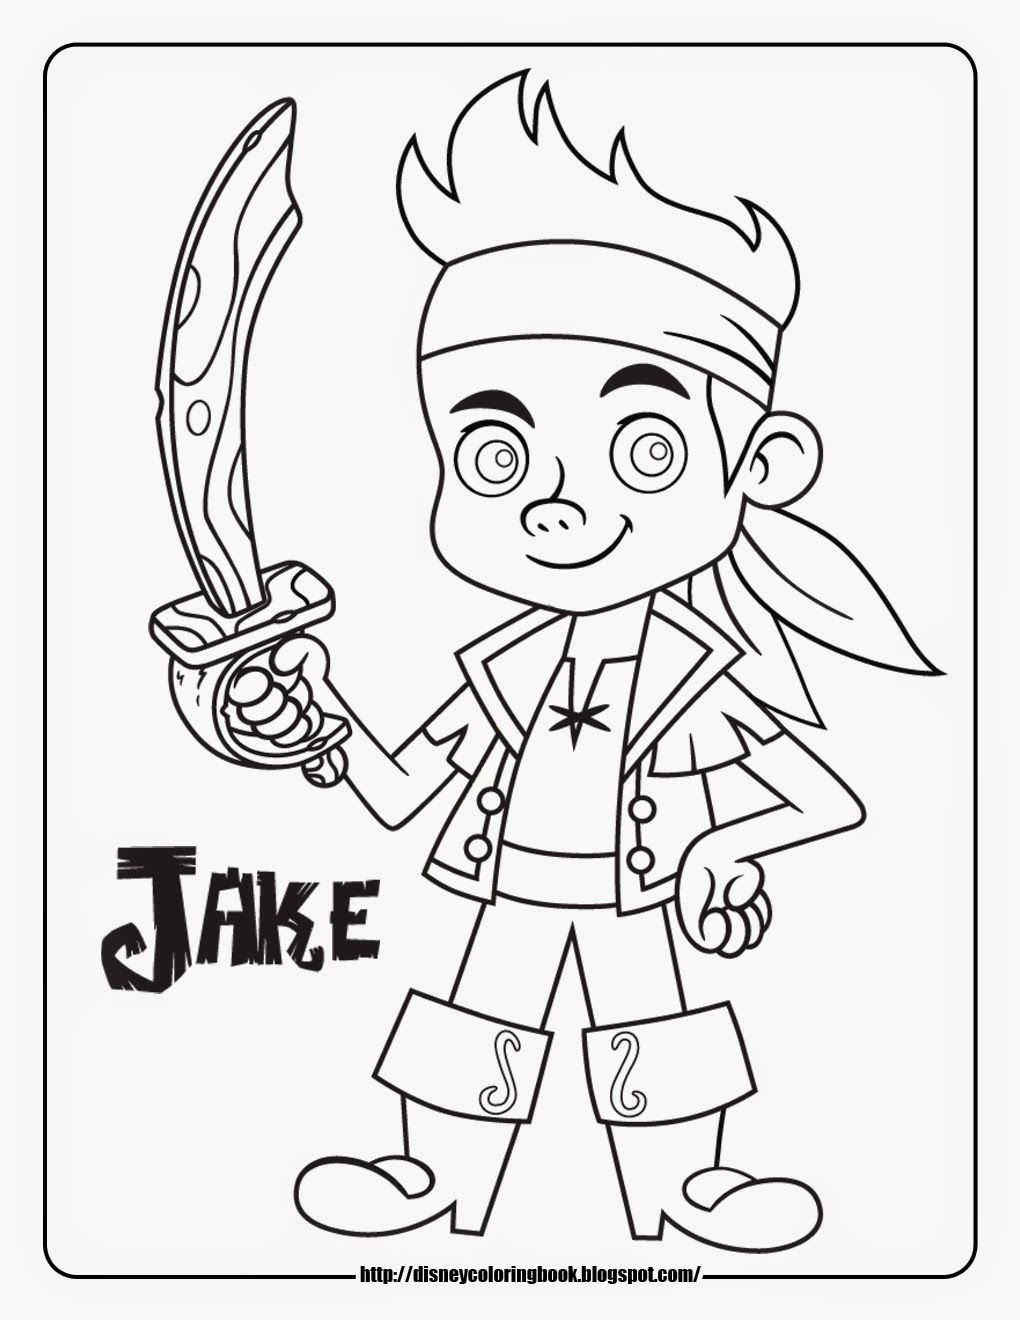 Desenhos para Colorir do Jake e os Piratas da Terra do Nunca e Imprimir